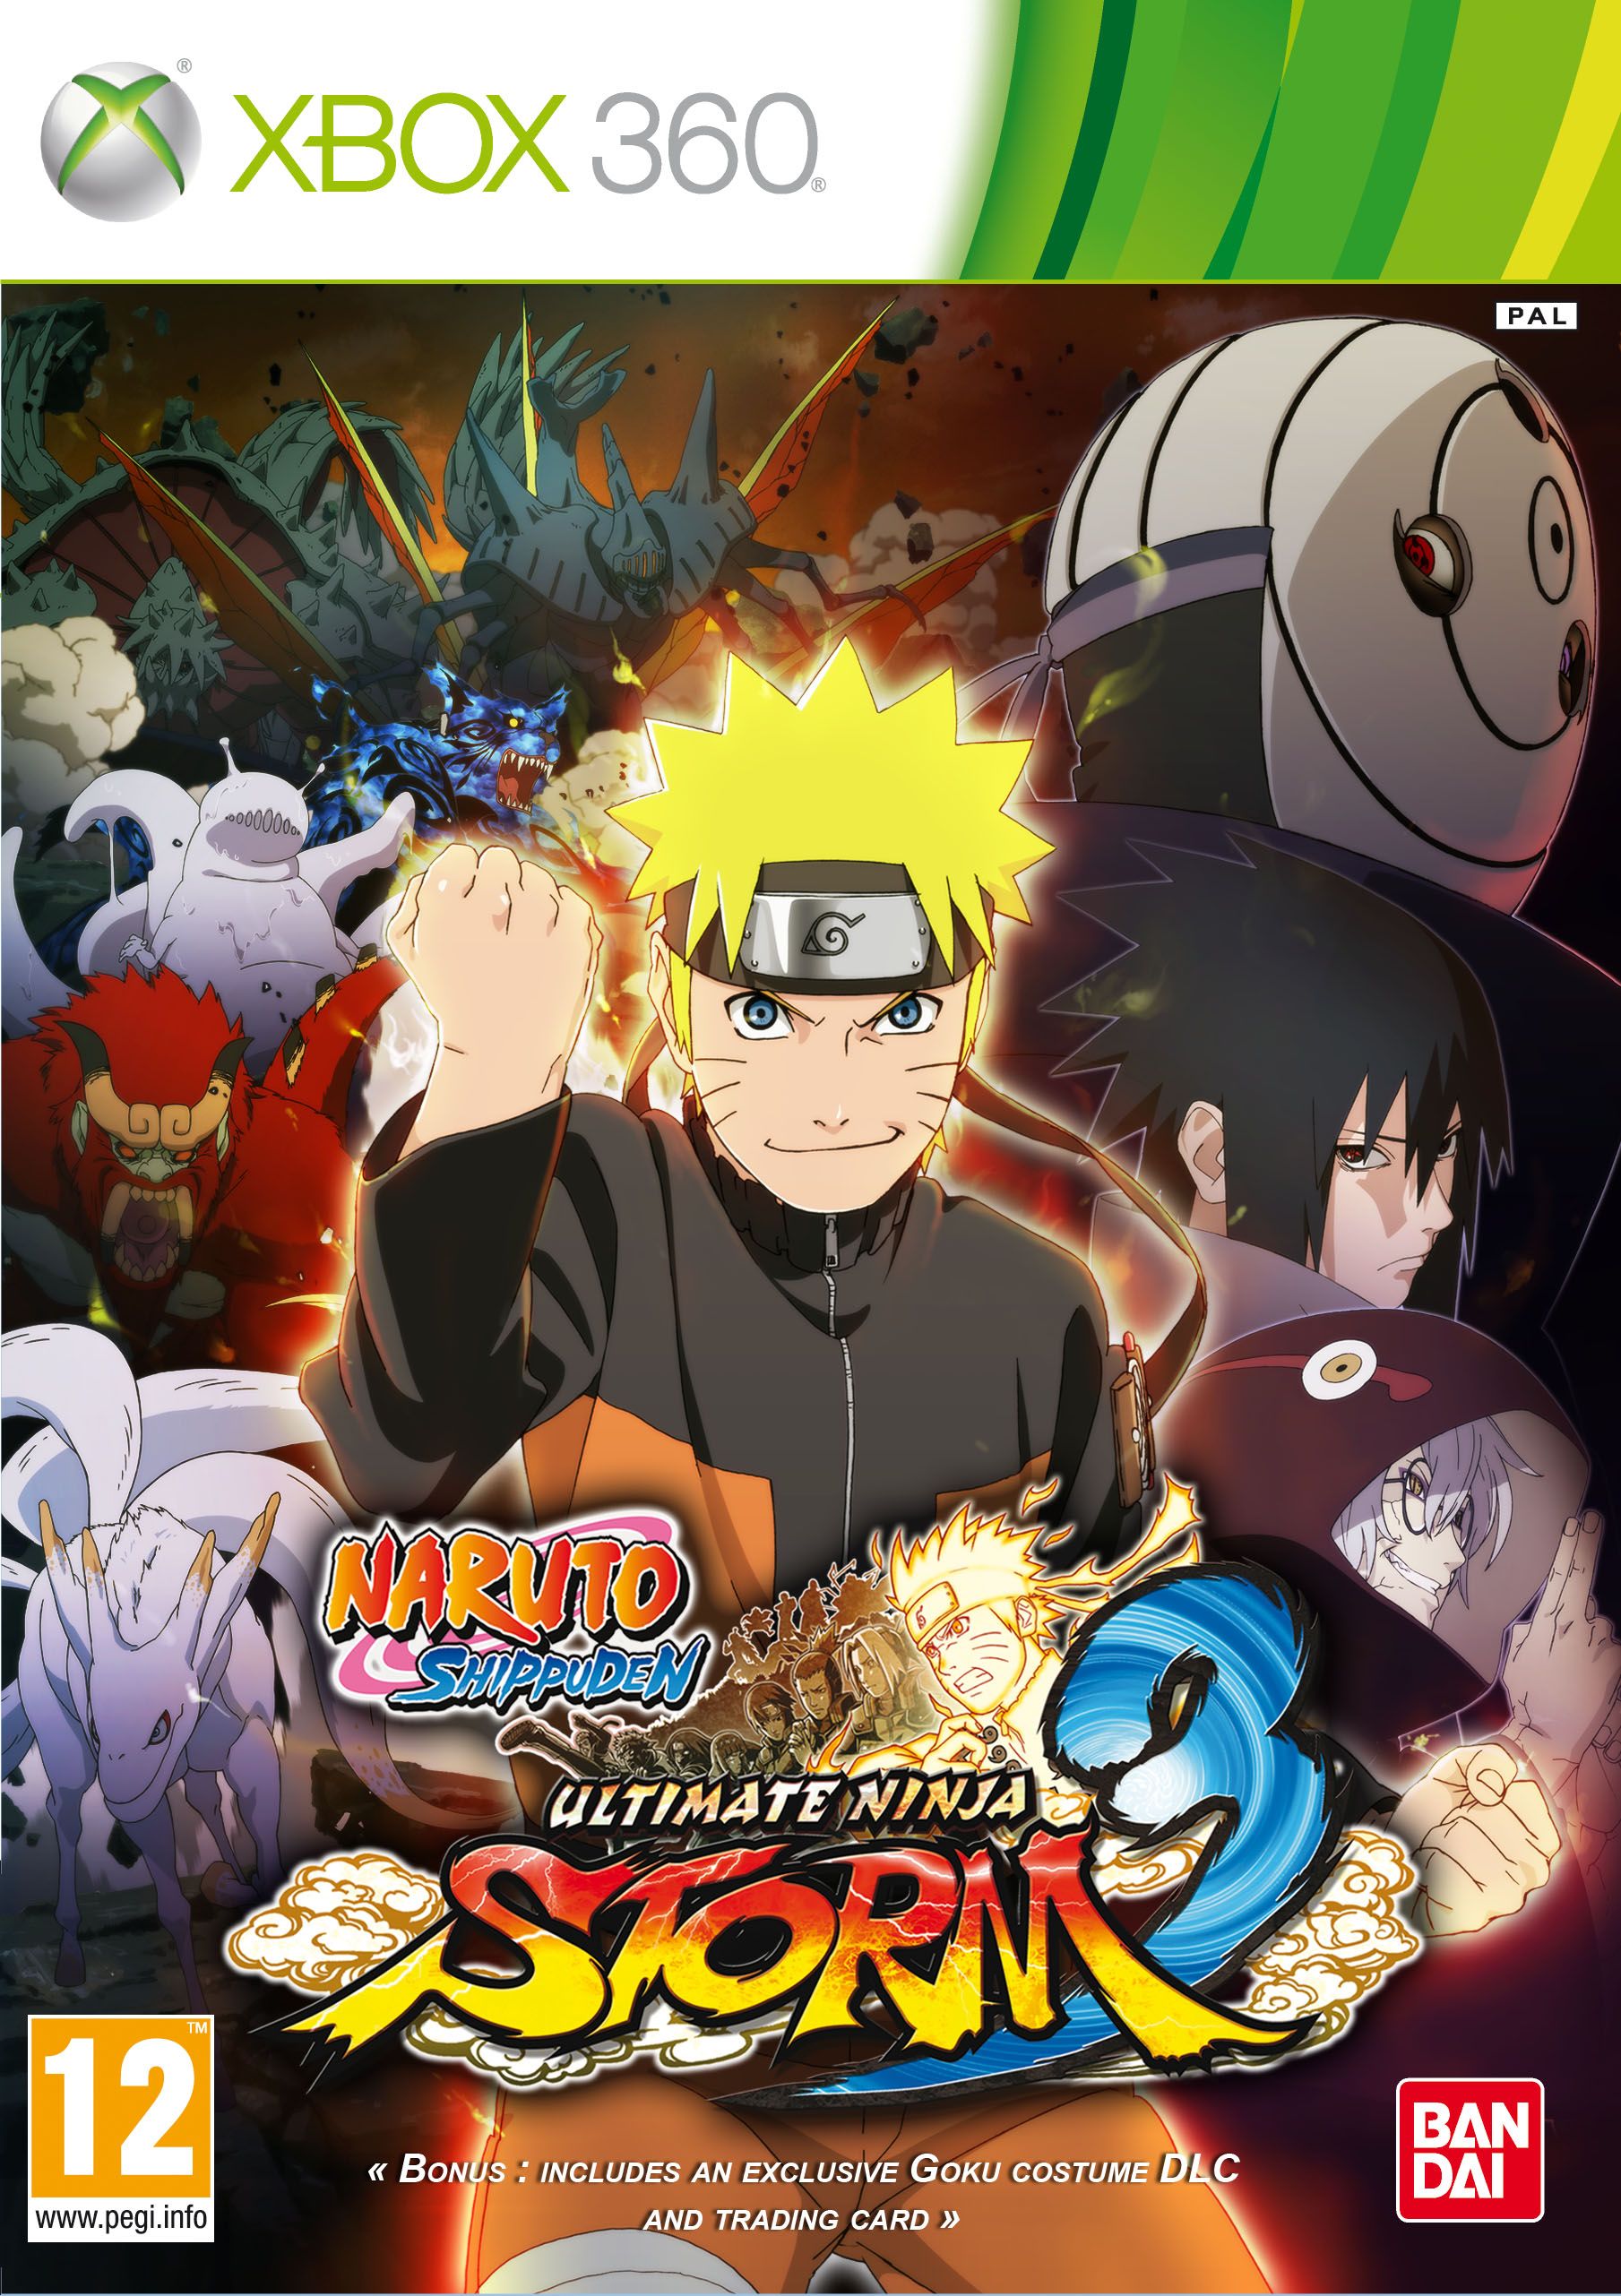 Naruto Shippuden Ultimate Ninja Storm 3: Actualités, test, avis et vidéos -  Gamekult